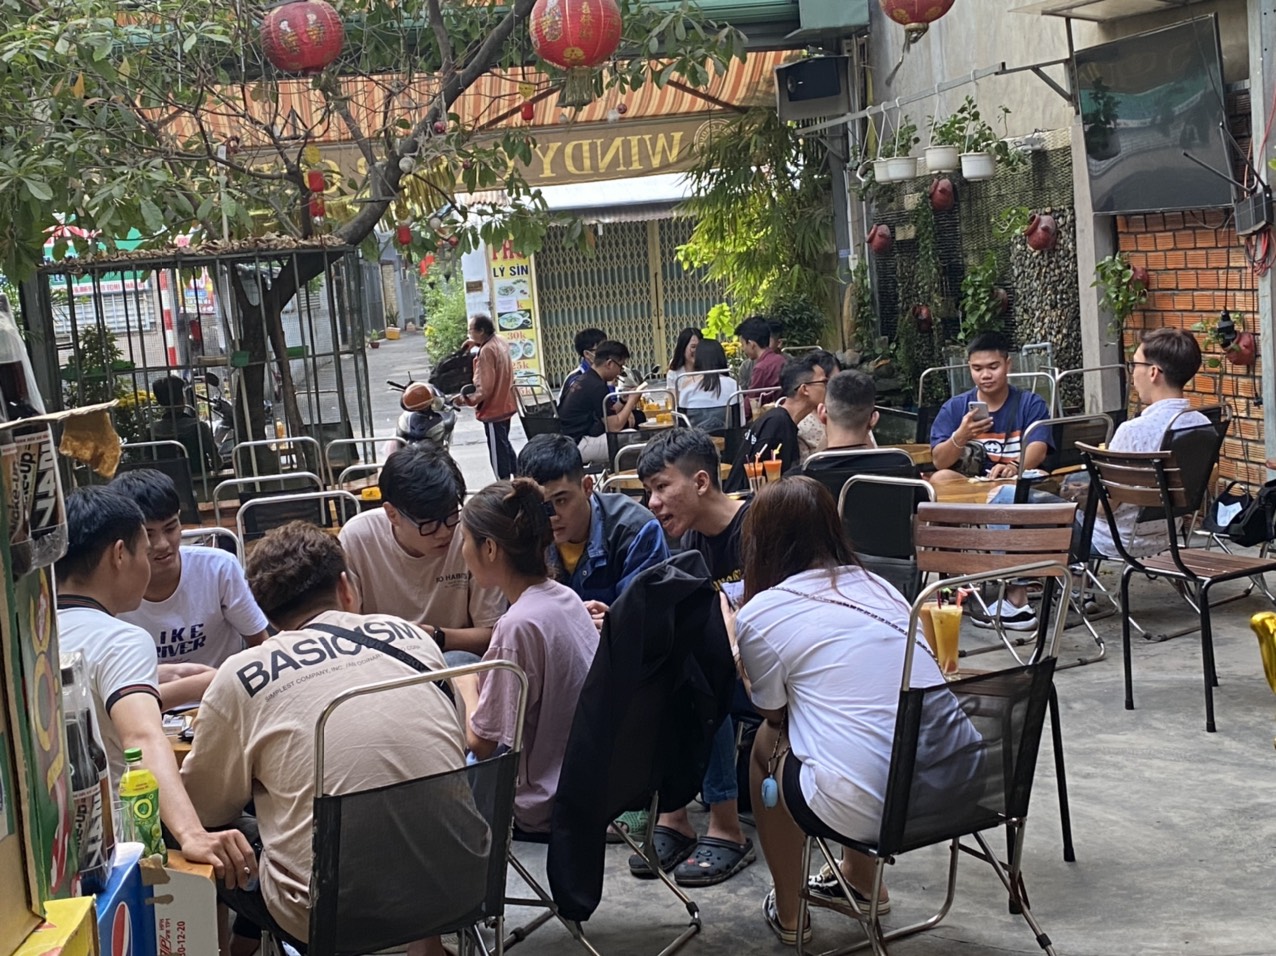 Bạn đang muốn sở hữu một quán cafe đẹp, có vị trí thuận lợi tại quận Gò Vấp? Hãy theo dõi hình ảnh của Sang quán cafe tại đây với những đặc điểm thuận lợi và menu đa dạng để mang đến cho khách hàng trải nghiệm tuyệt vời.